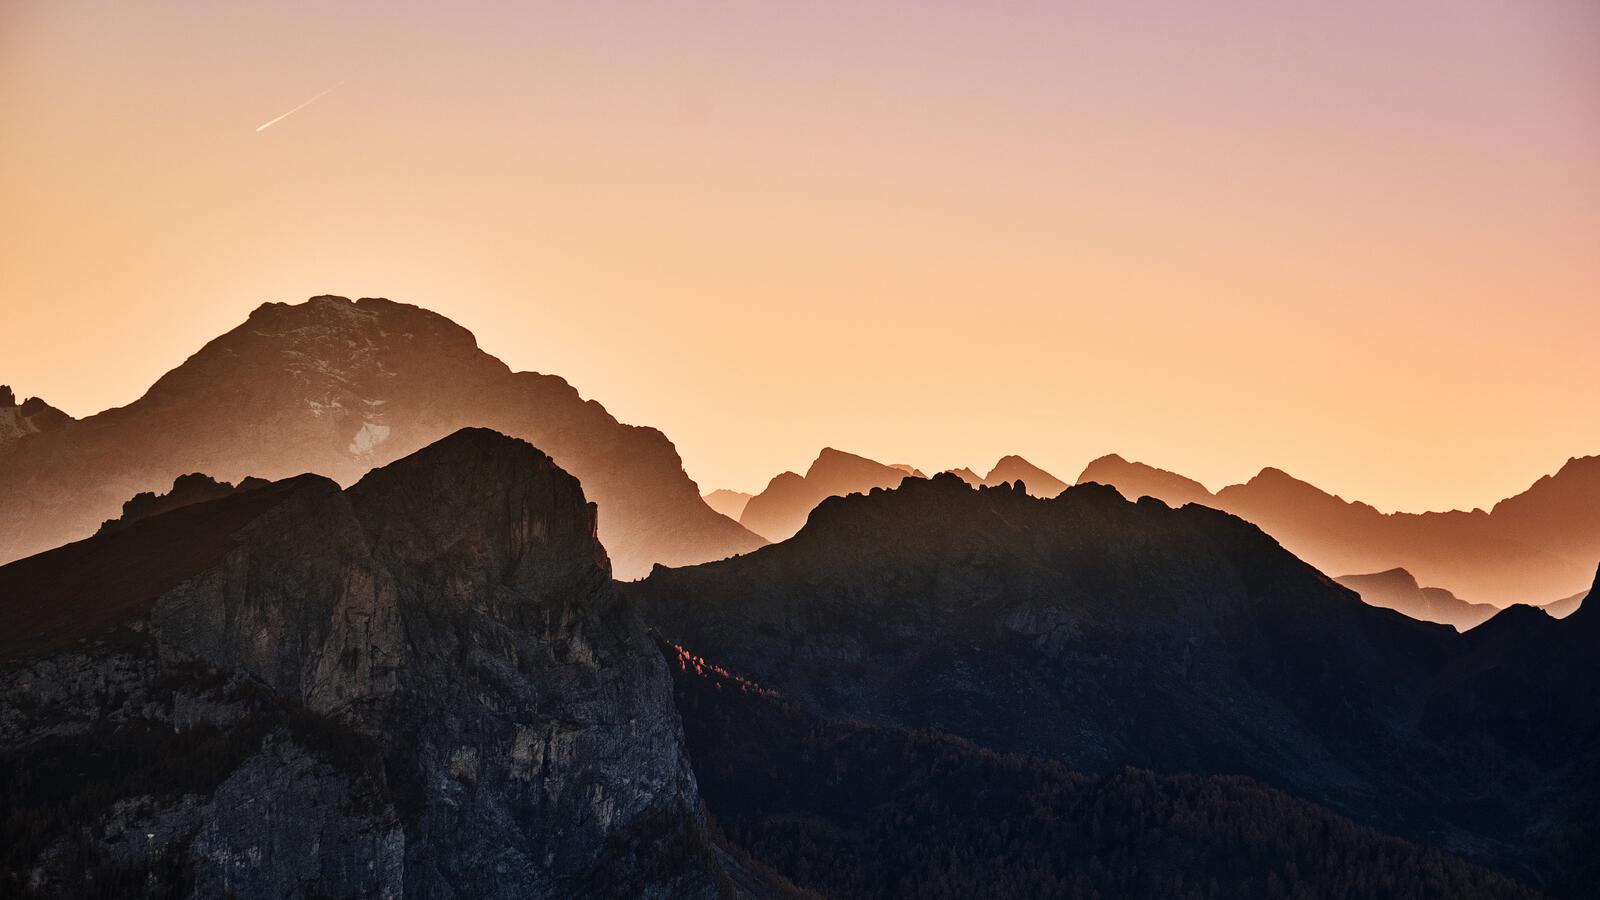 Бесплатное фото Холмы гор на фоне красочного неба с падающий звездой